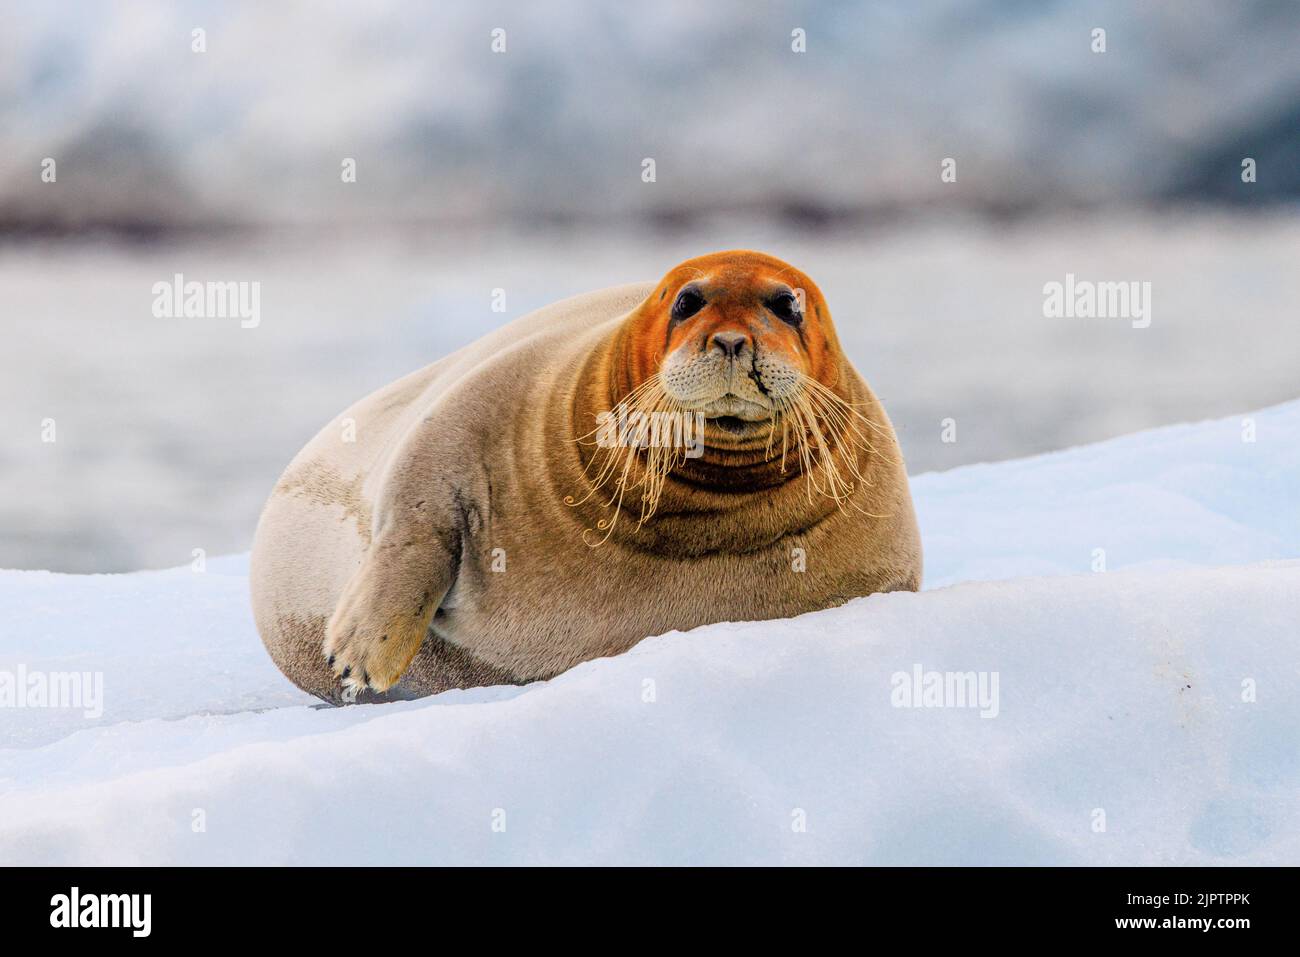 Eine bärtige Robbe mit einem leuchtend orangenen Kopf und einer Narbe im Gesicht blickt von ihrem eisigen Bett aus direkt auf Sie Stockfoto